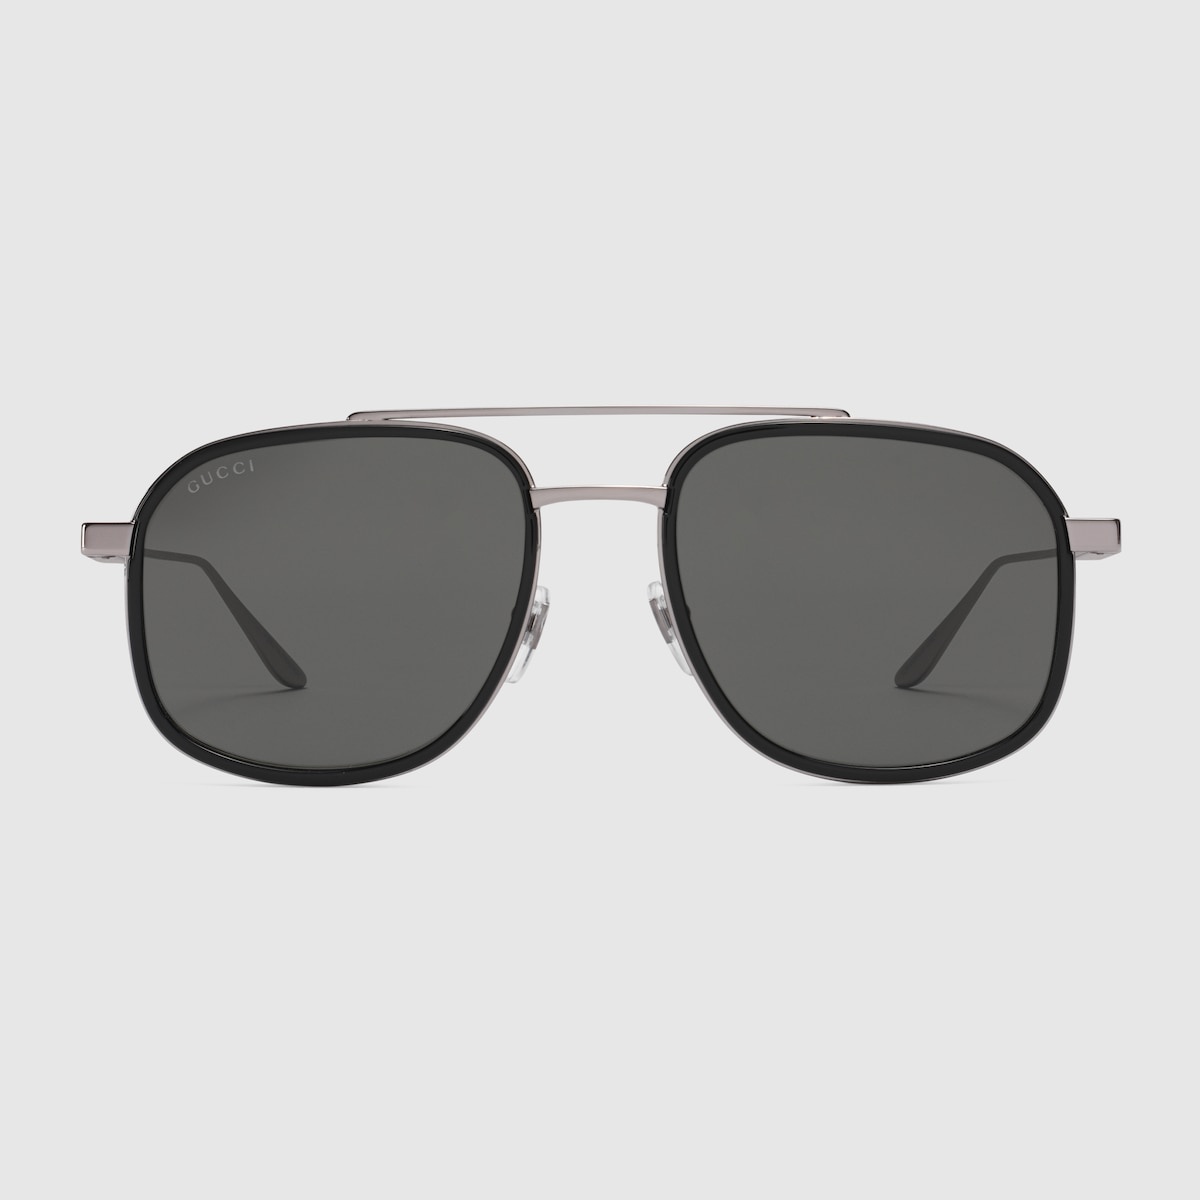 Navigator frame sunglasses - 1